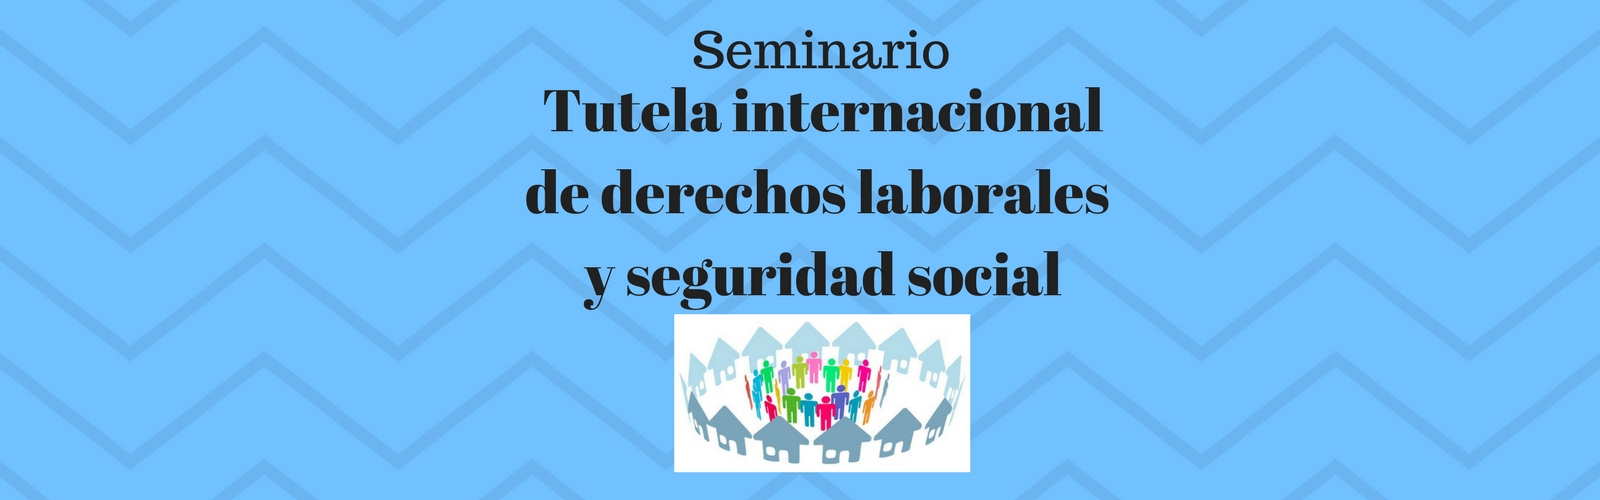 Seminario "Tutela internacional de derechos laborales y de Seguridad Social"